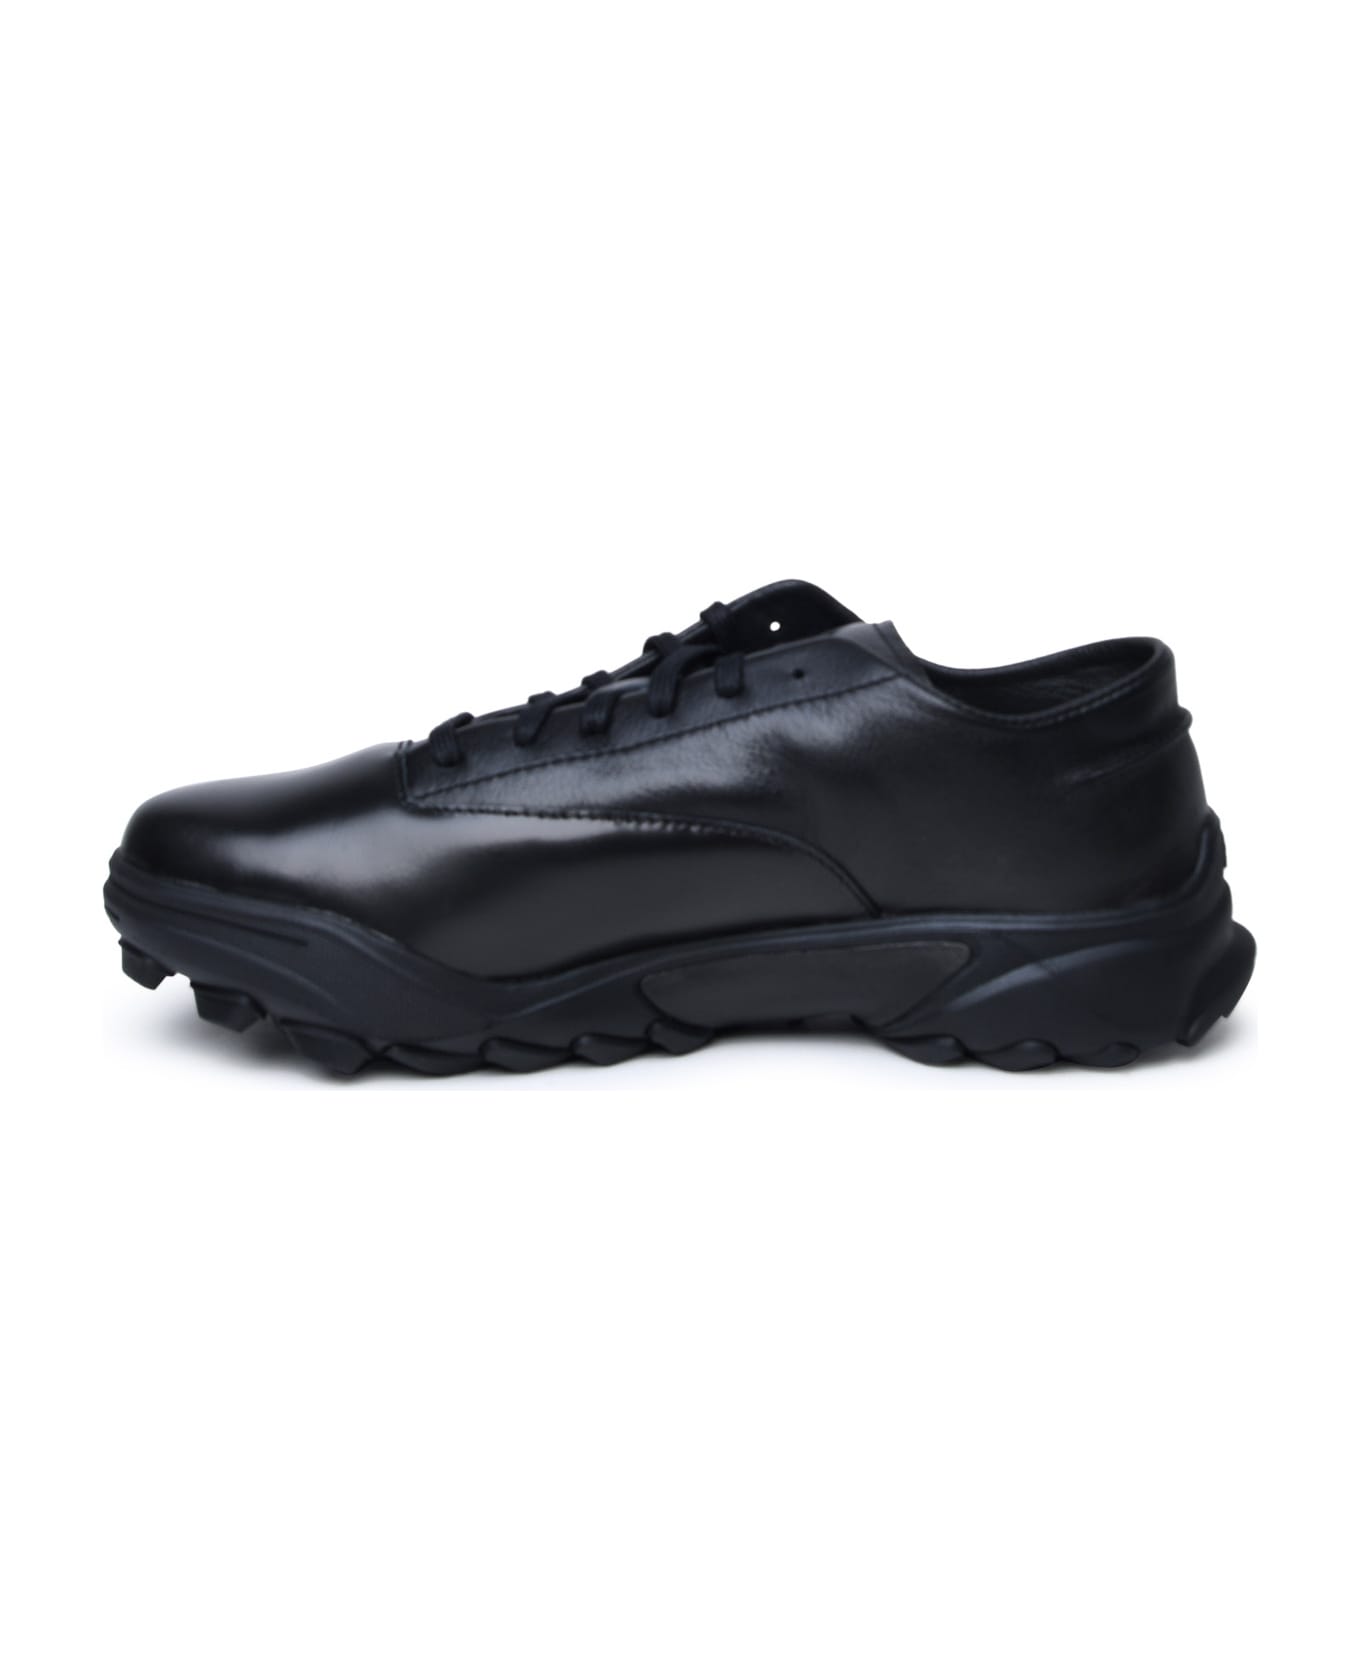 Y-3 Black Leather Sneakers - Black スニーカー